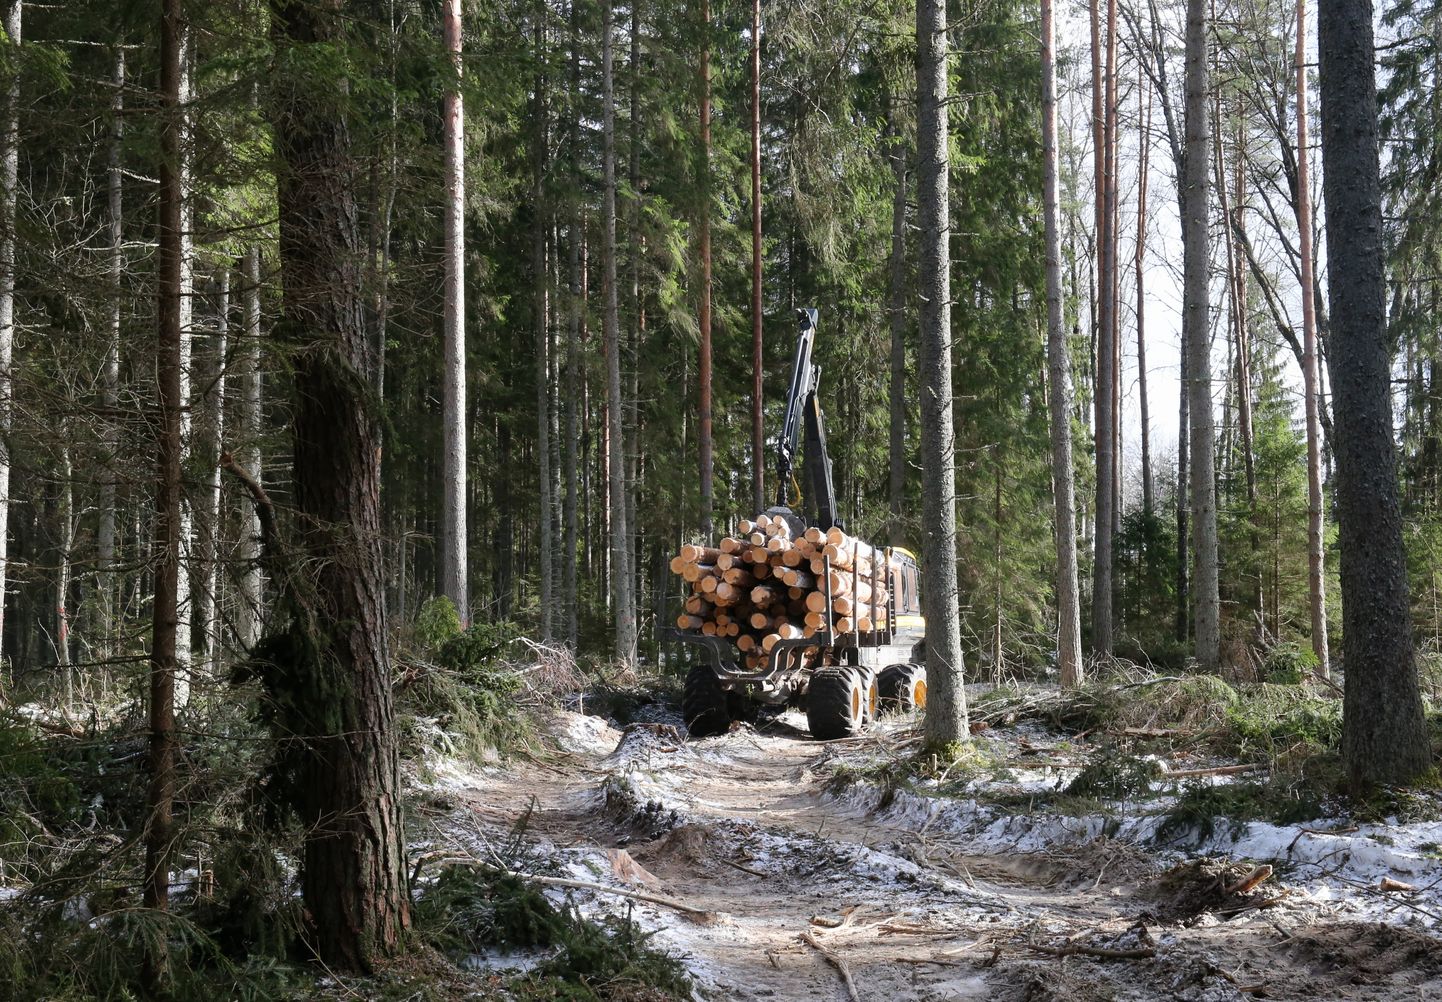 Pöördumises "Lageraied ajalikku" seisab: "Riigimets on meie kõigi ühine mets. Igale Eesti elanikule “kuulub” riigi metsast 0,9 hektarit metsamaad. Ometi pole rahvale antud otsustusõigust meie metsade kasutuse ja raiumise üle."